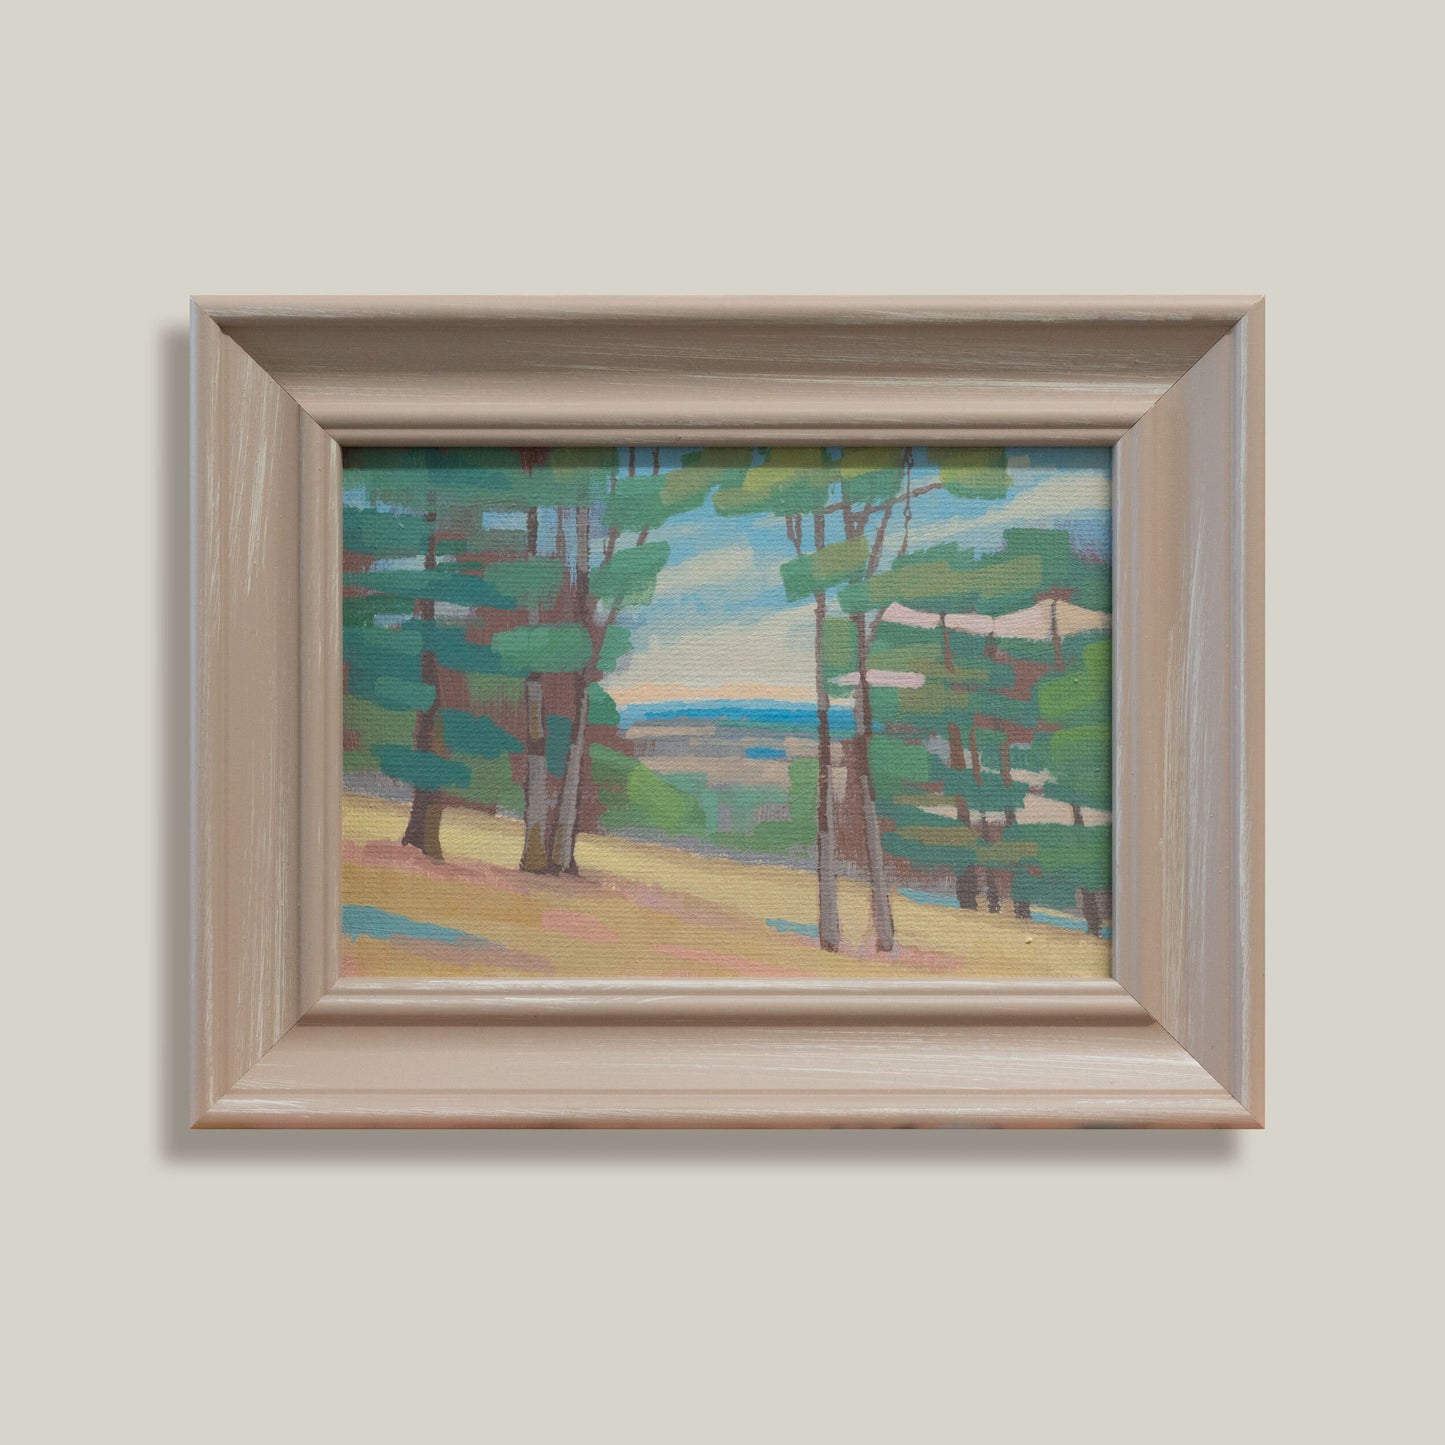 Original Gemälde – "Weitblick" - handgemalt – Acrylbild – 10x15 cm – Landschaft Bild – Einzelstück – mit Rahmen